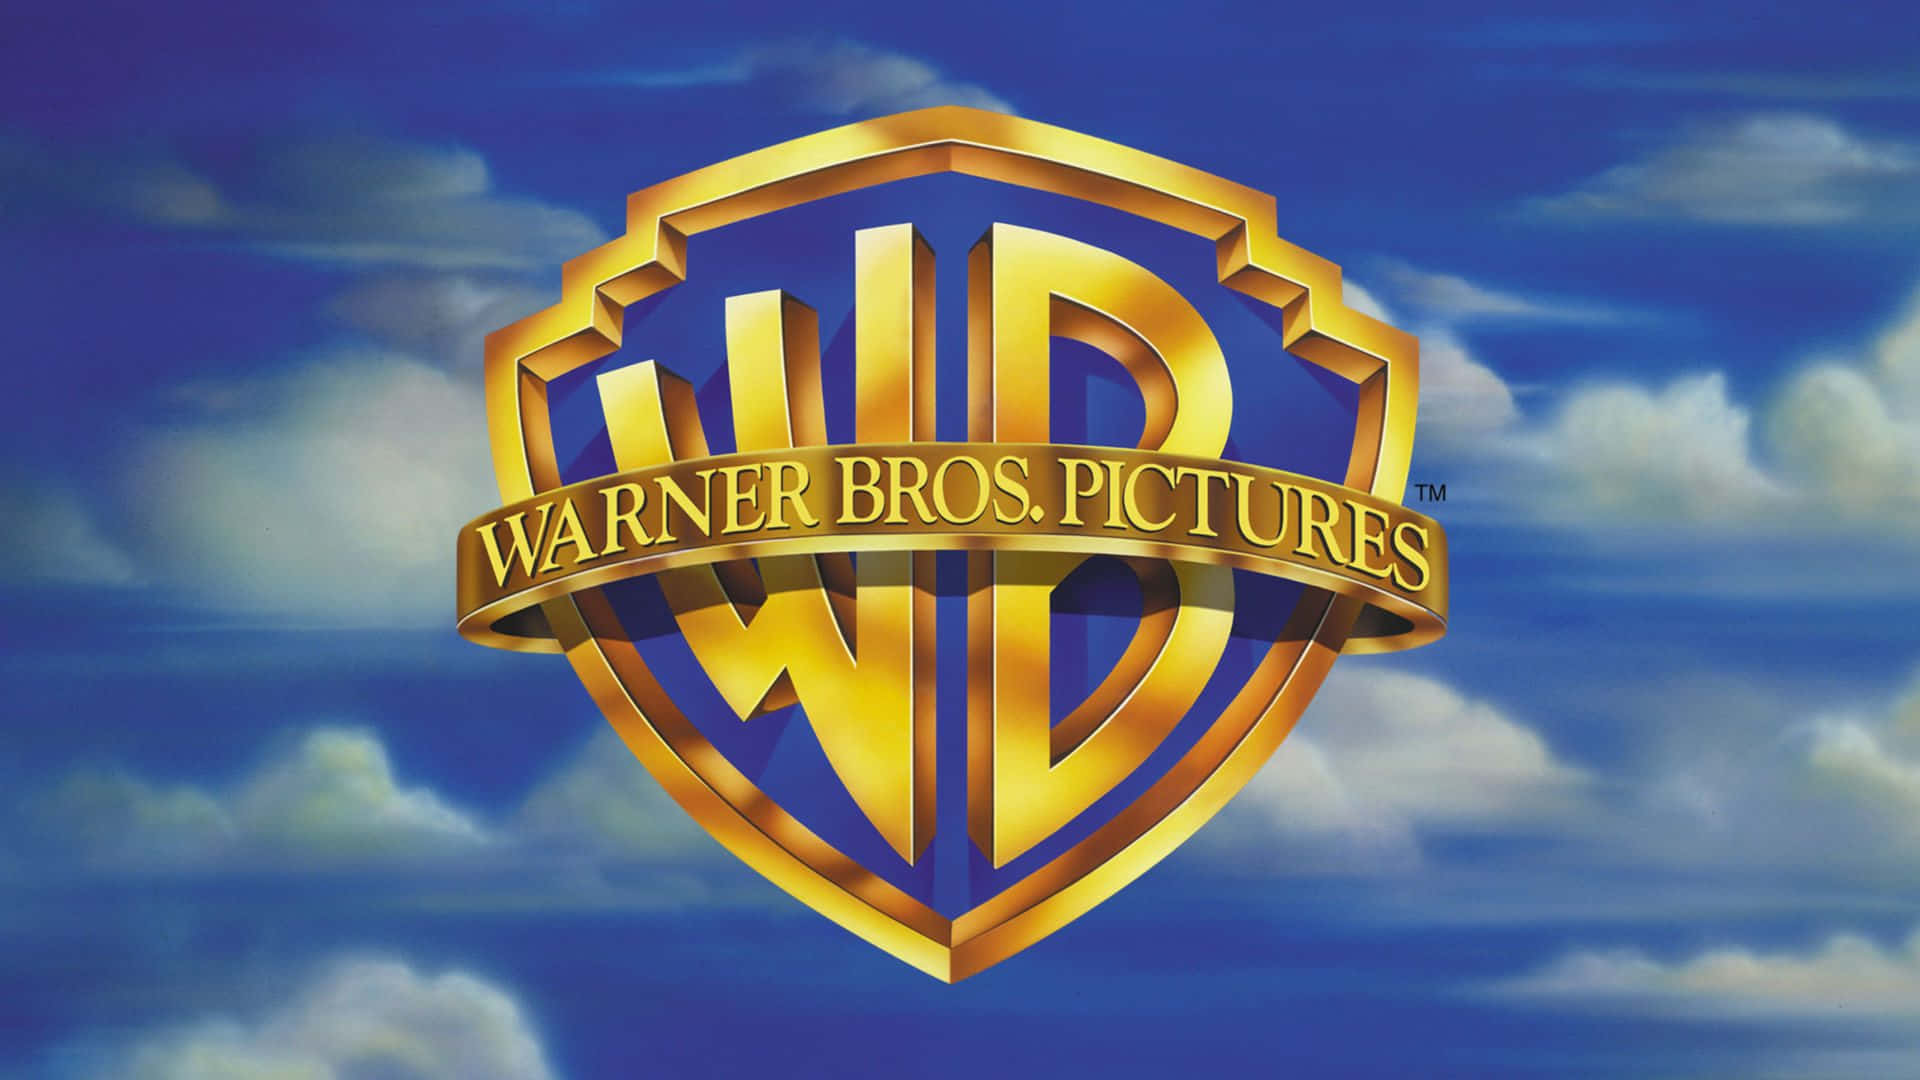 Vecchiaimmagine Di Warner Bros